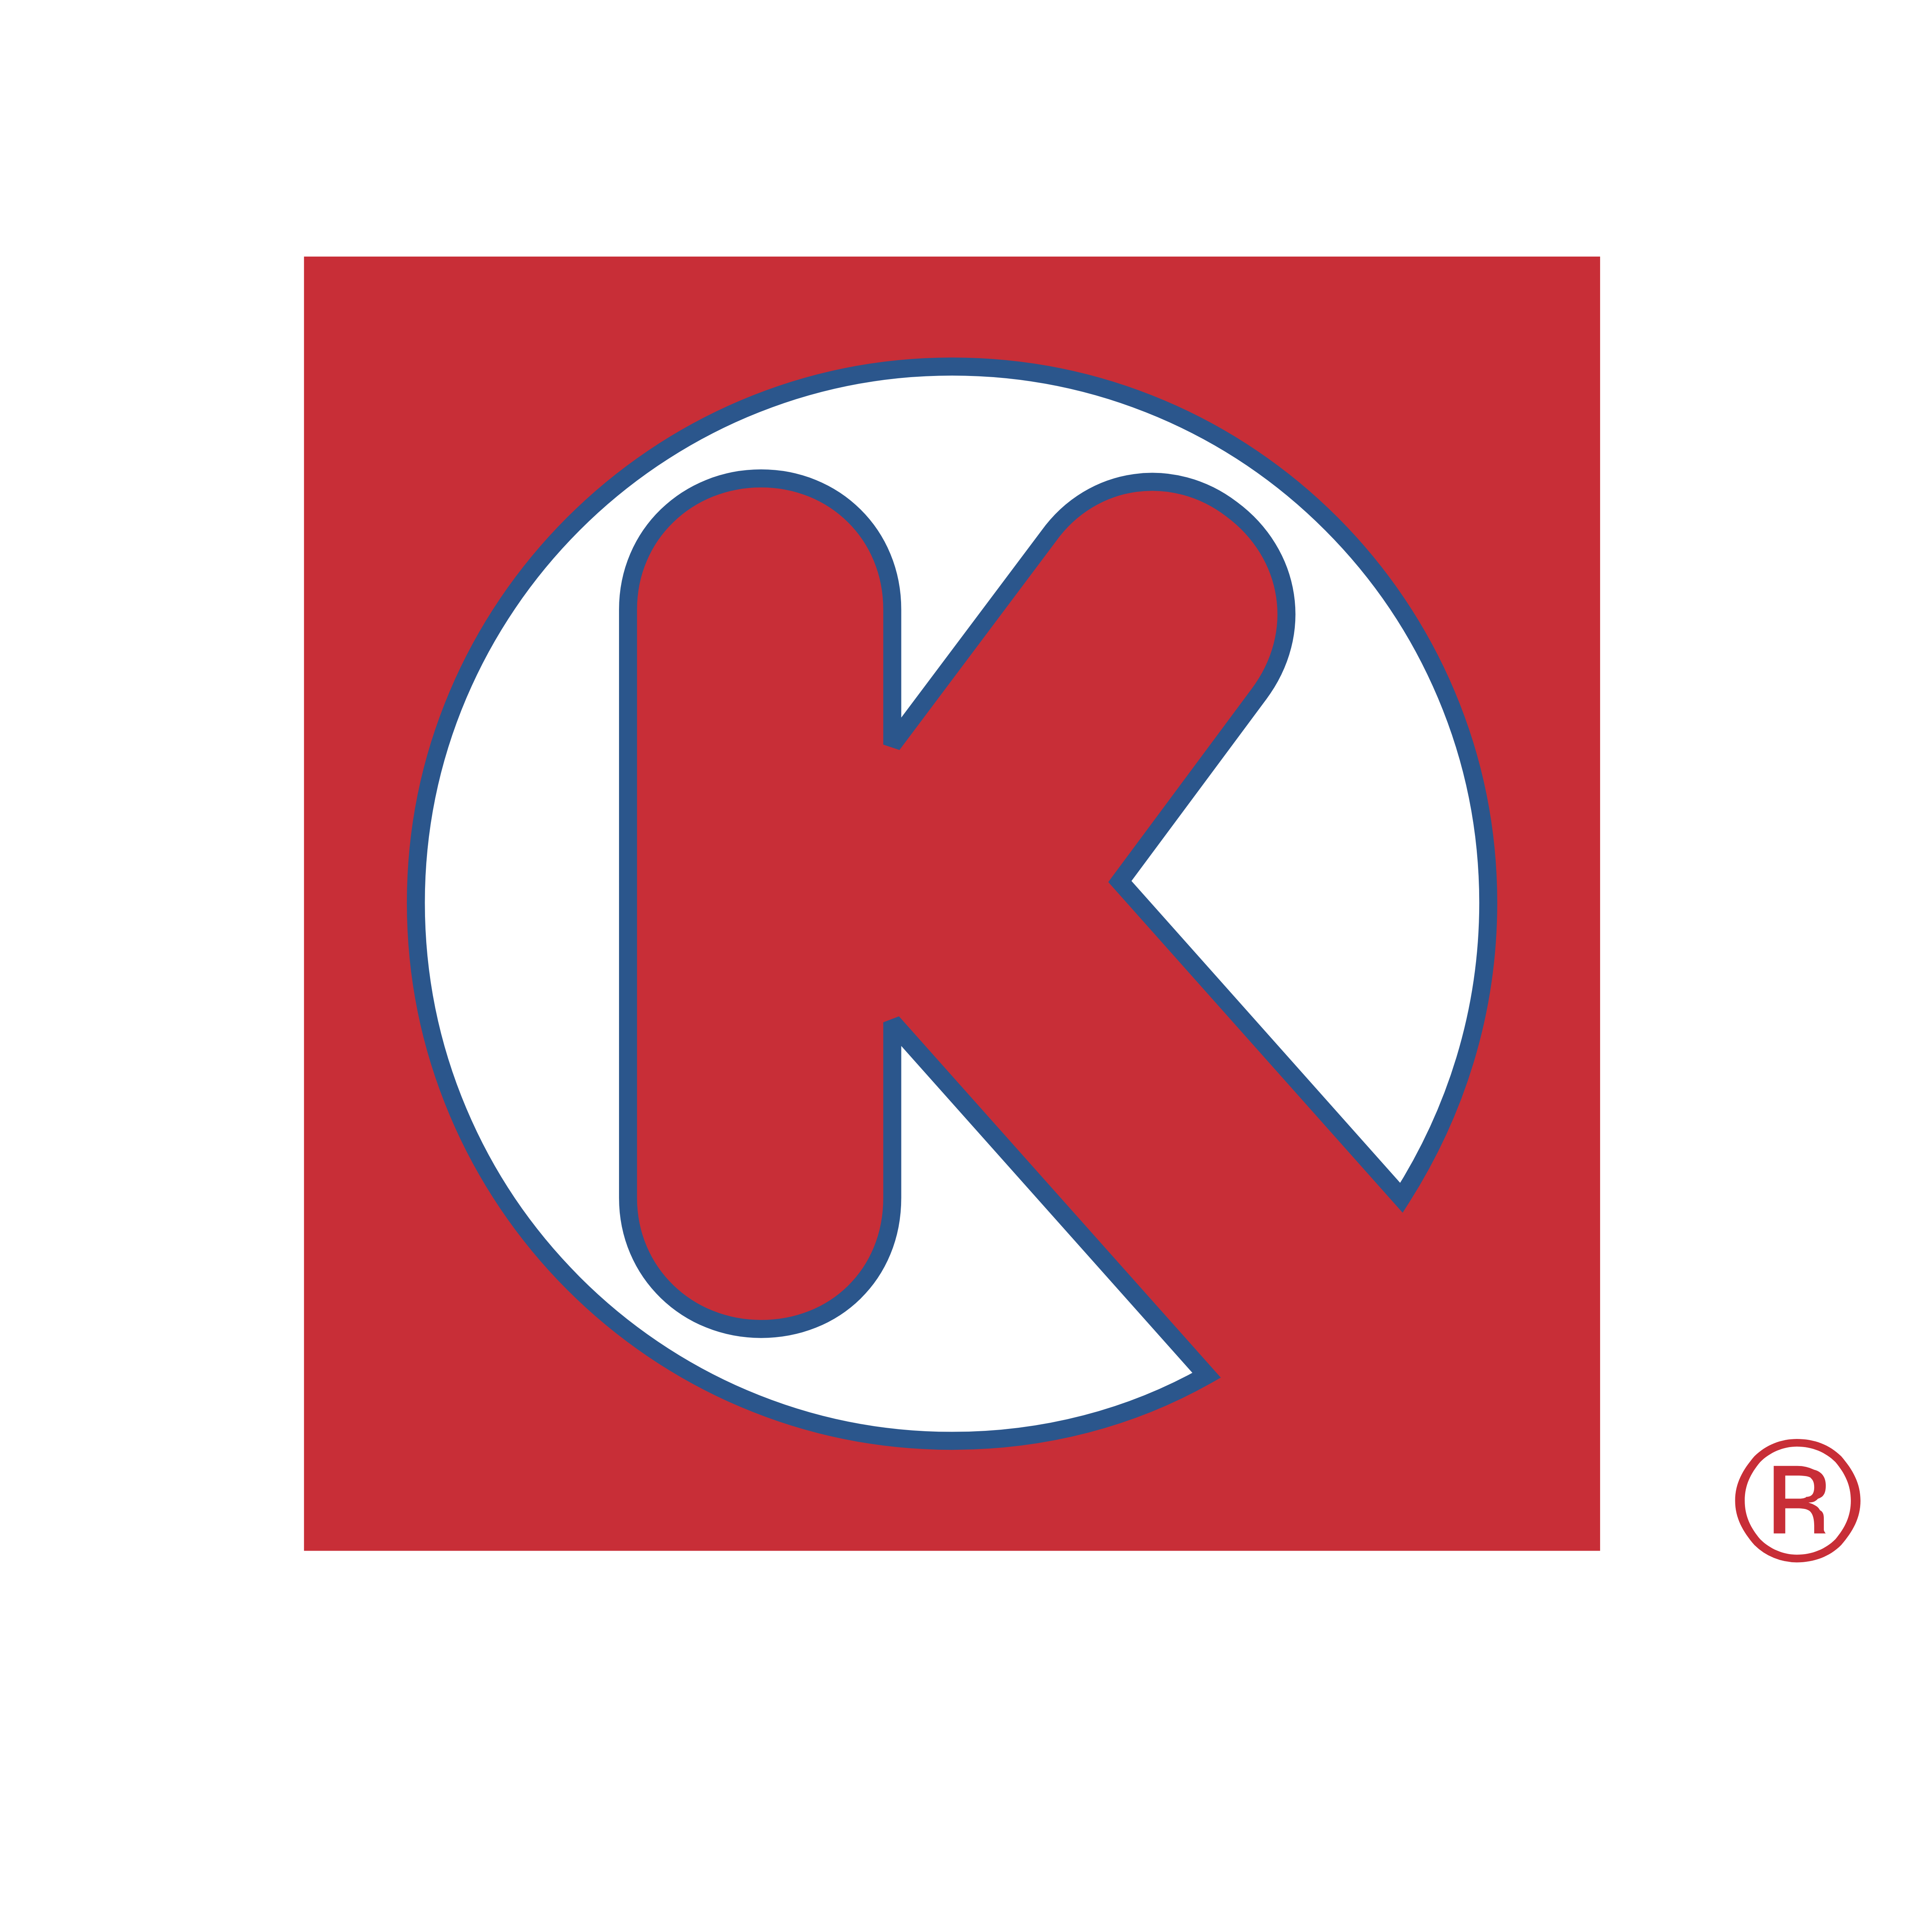 Maroon K Logo - Circle K – Logos Download